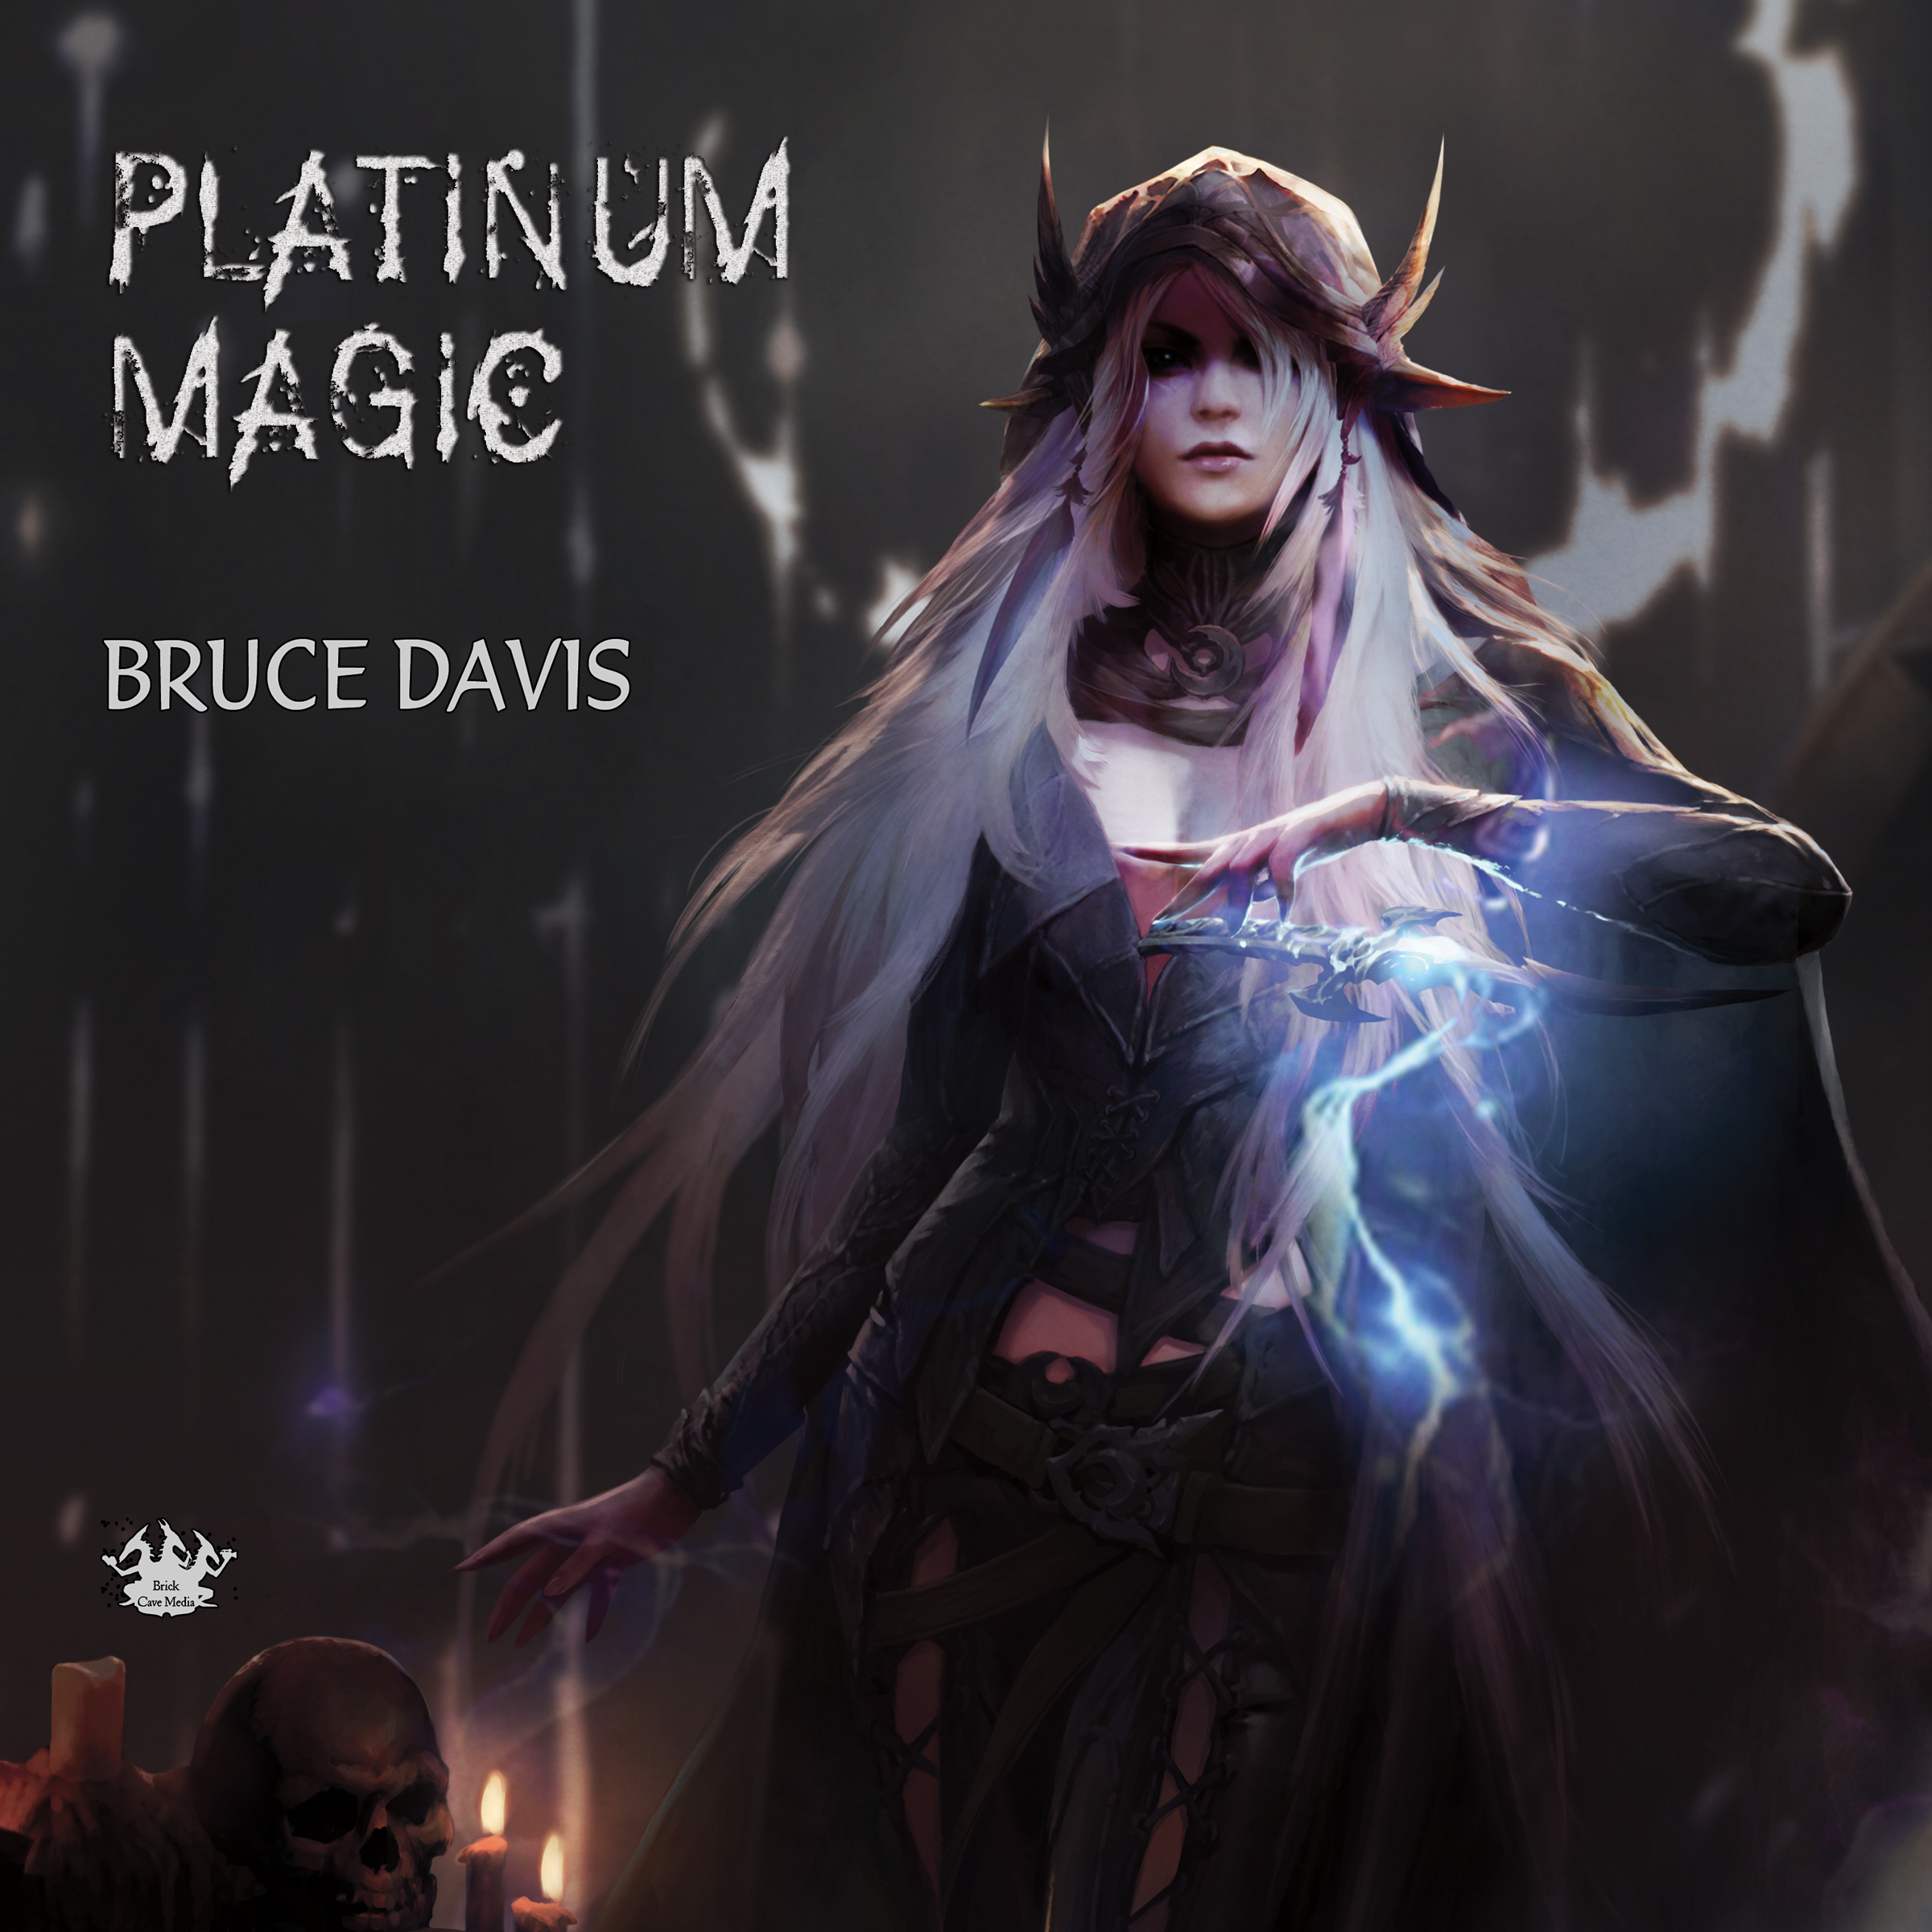 Platinum Magic in Audio Book, Available Now